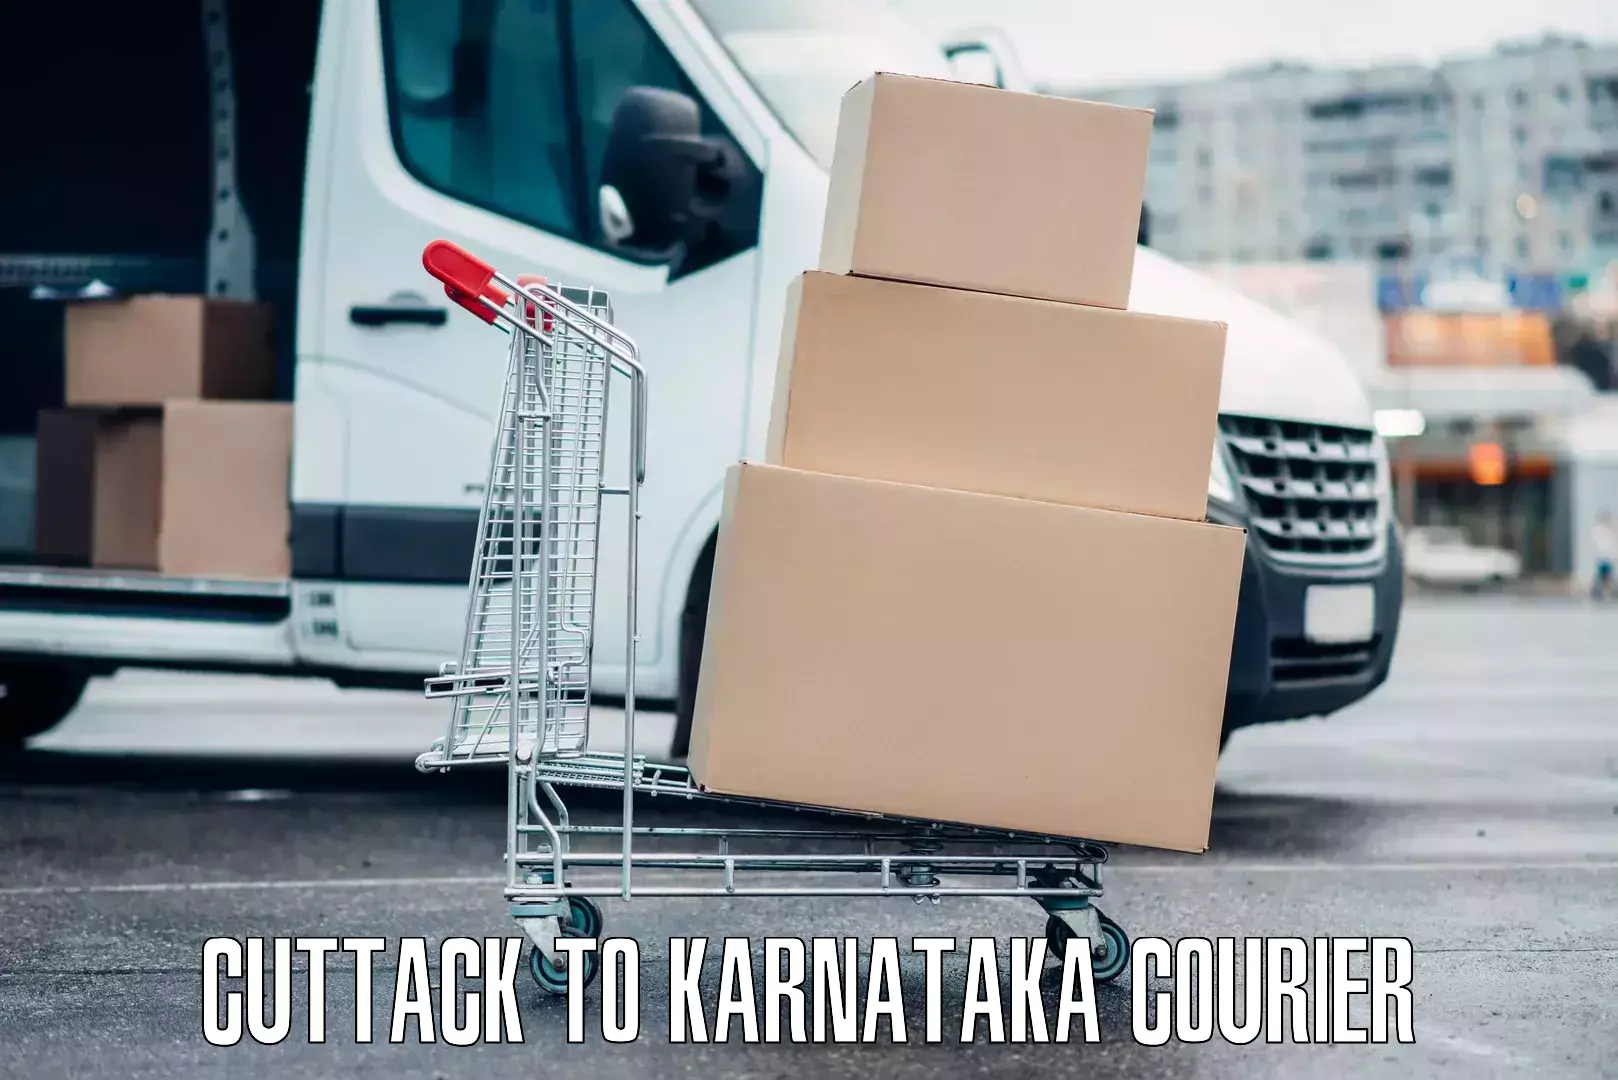 Emergency baggage service Cuttack to Karnataka